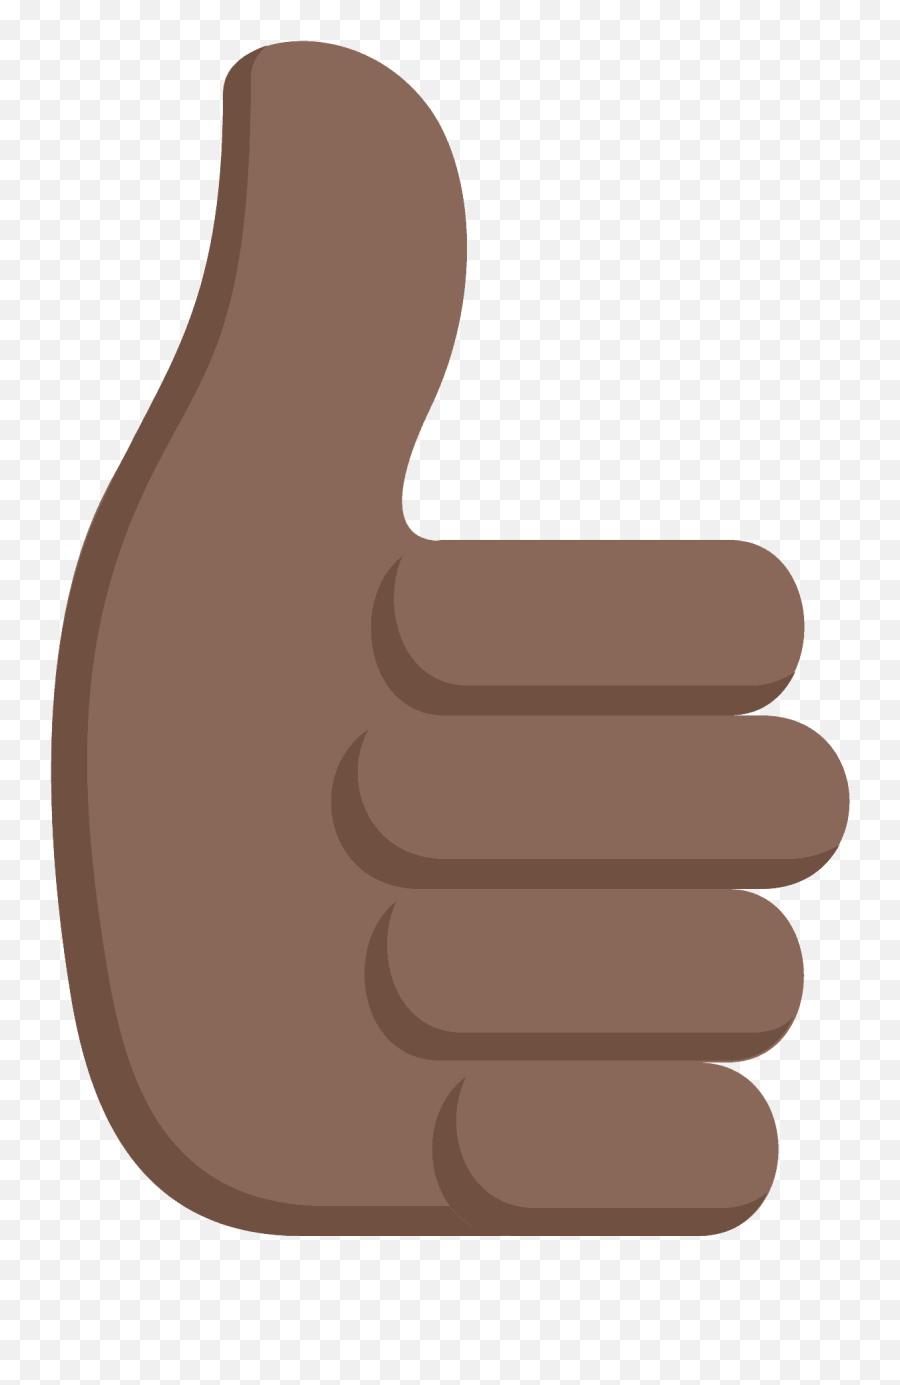 Thumbs Up Emoji Clipart - Thumbs Up Emoji Vector,Thumbsup Emoji